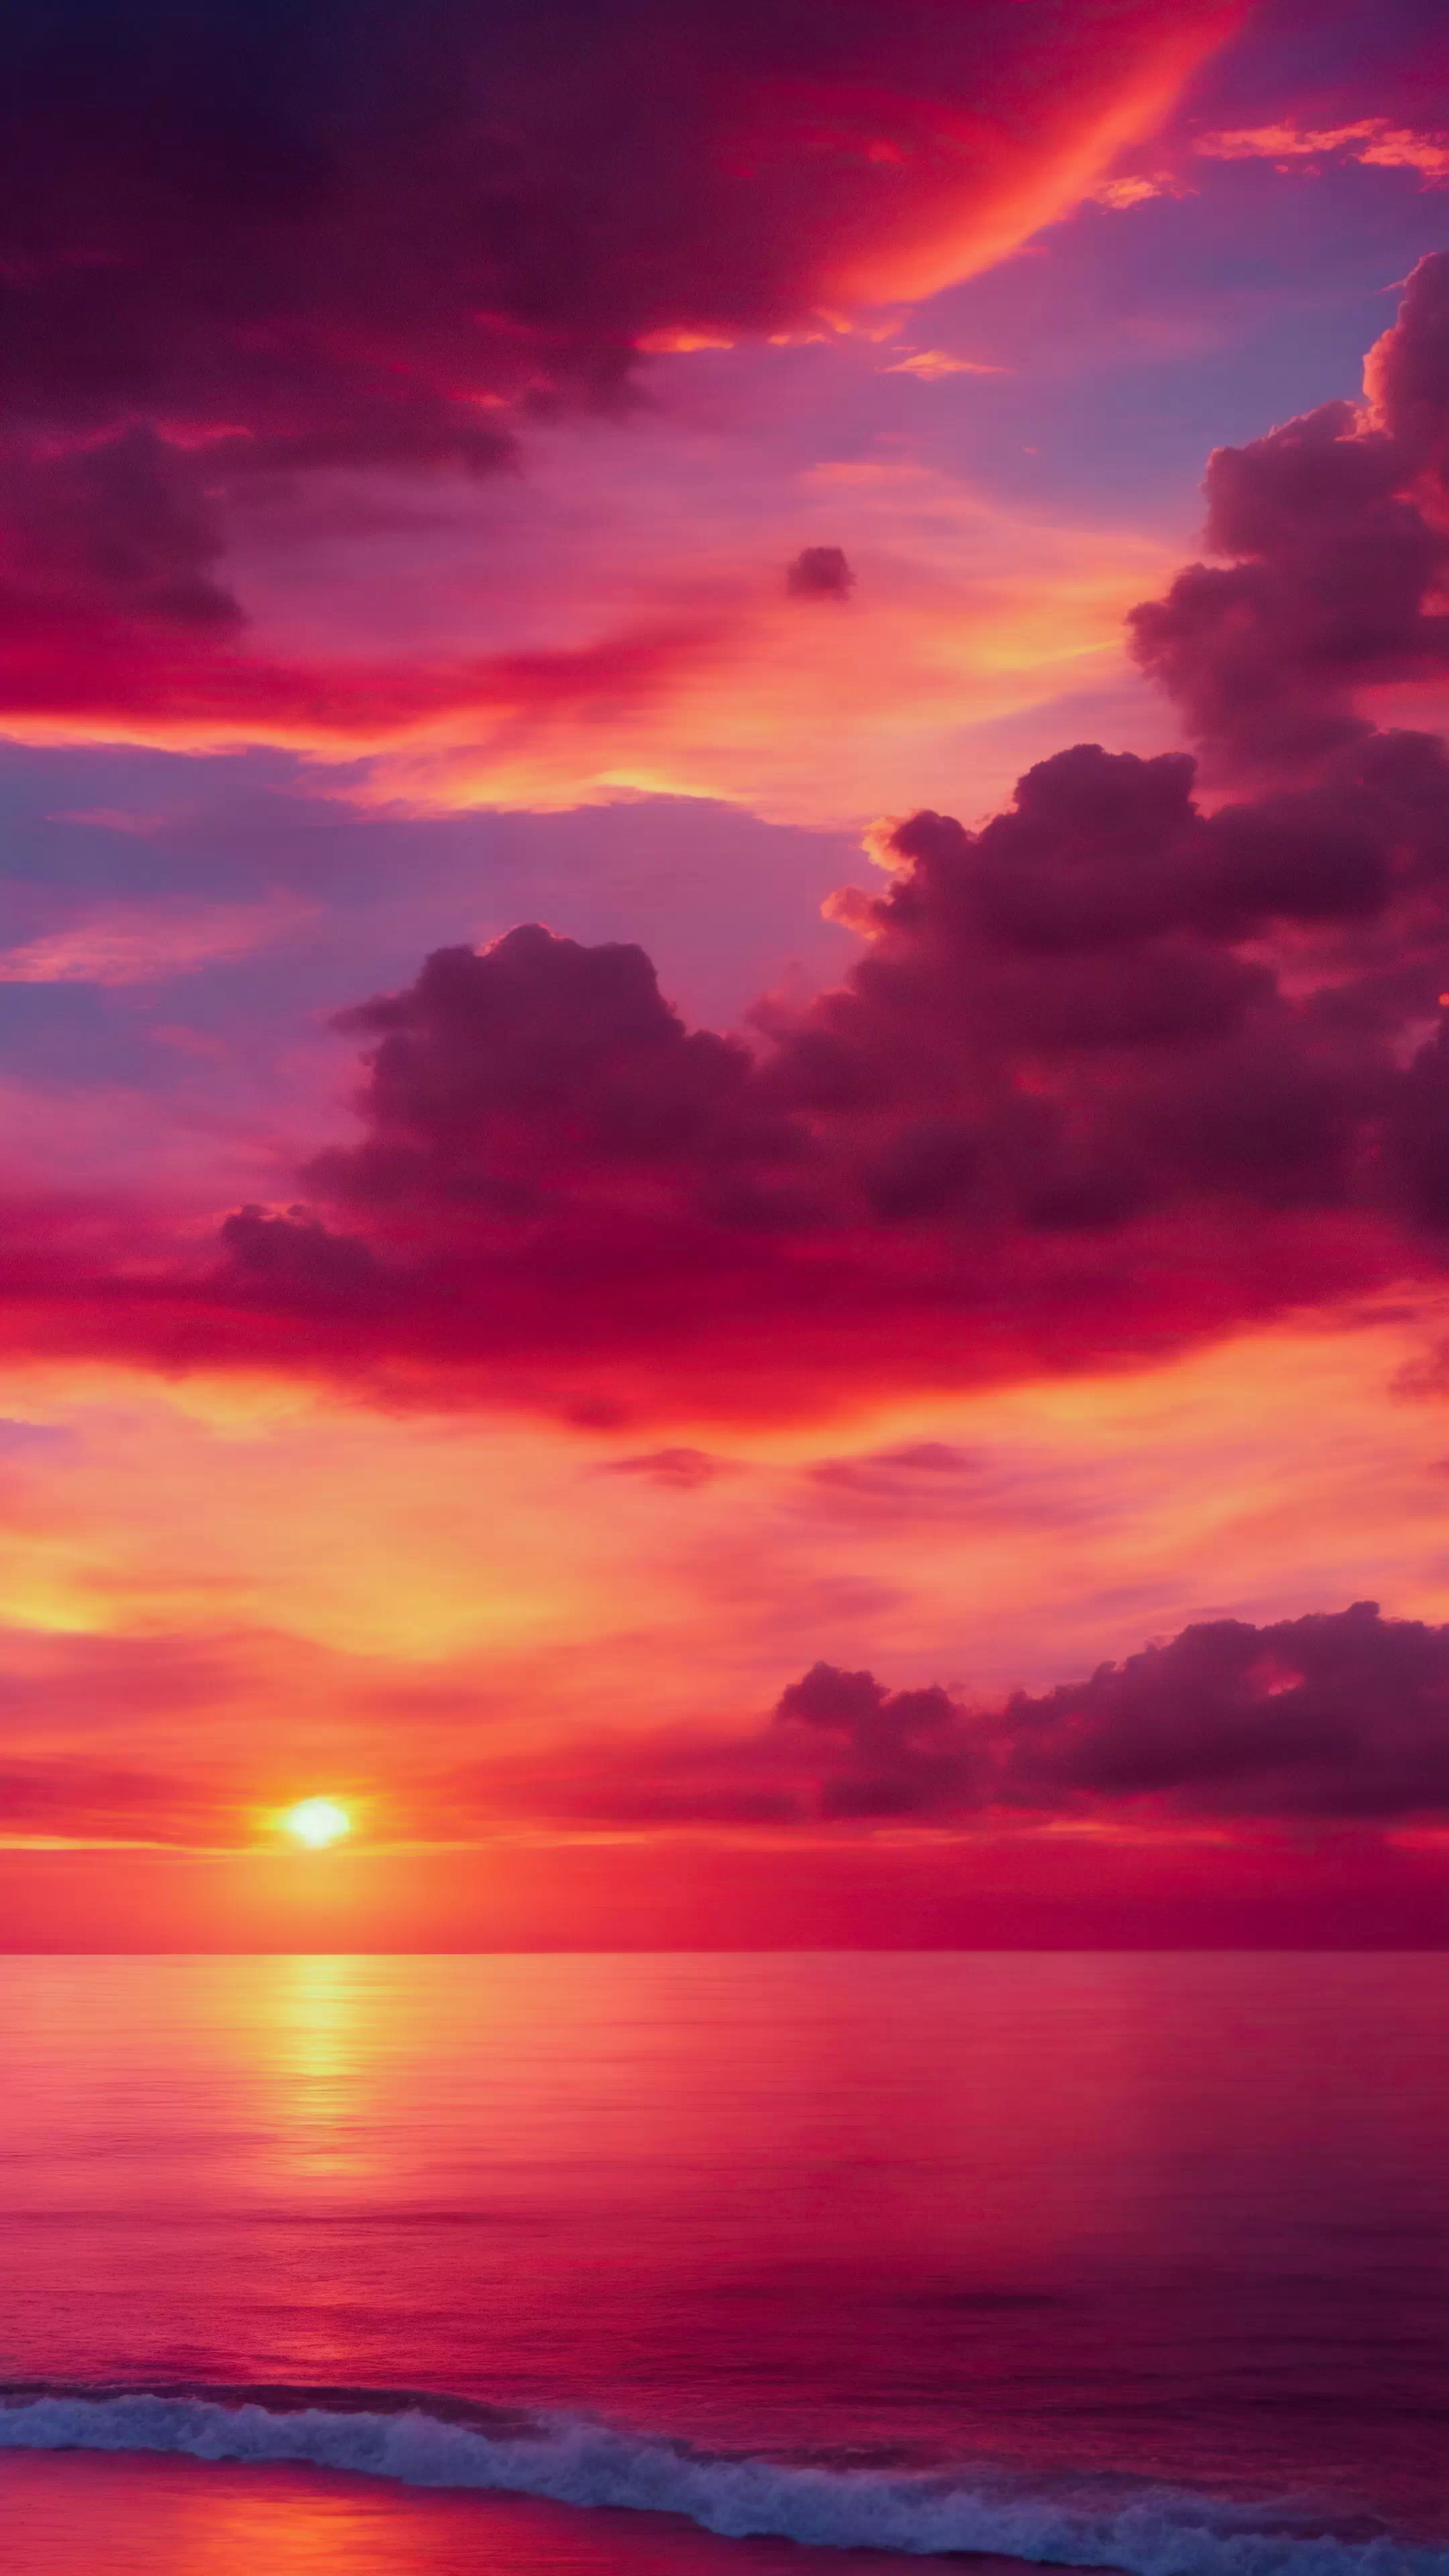 Vivez le spectacle d'un coucher de soleil avec notre fond d'écran HD de paysages pour iPhone, présentant des teintes ardentes d'orange et de rose, et laissez votre écran devenir une toile pour les couleurs les plus vibrantes de la nature.